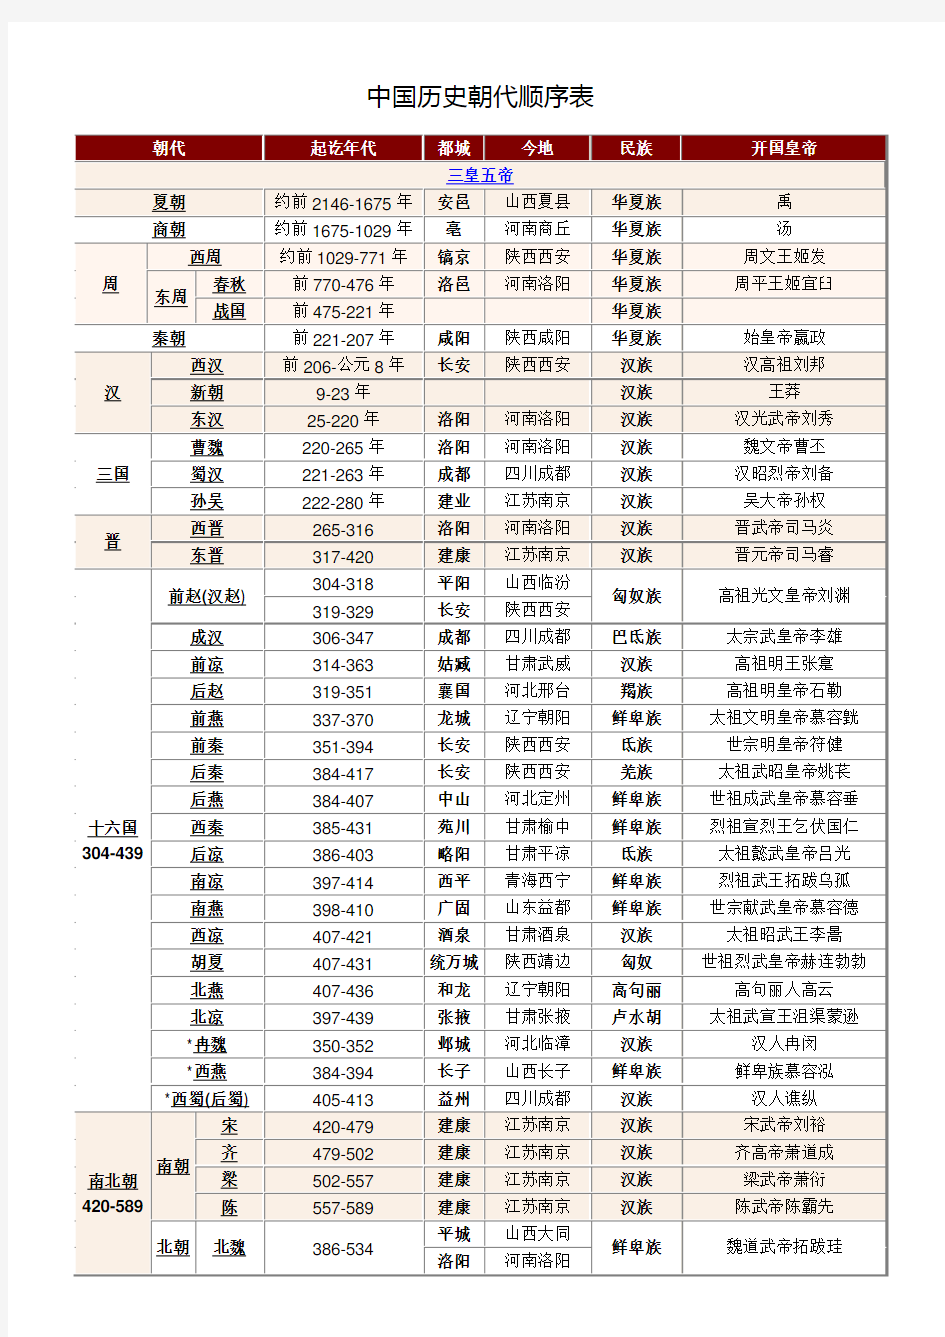 中国历史朝代顺序表(及历朝口诀、华夏族演变汉族)